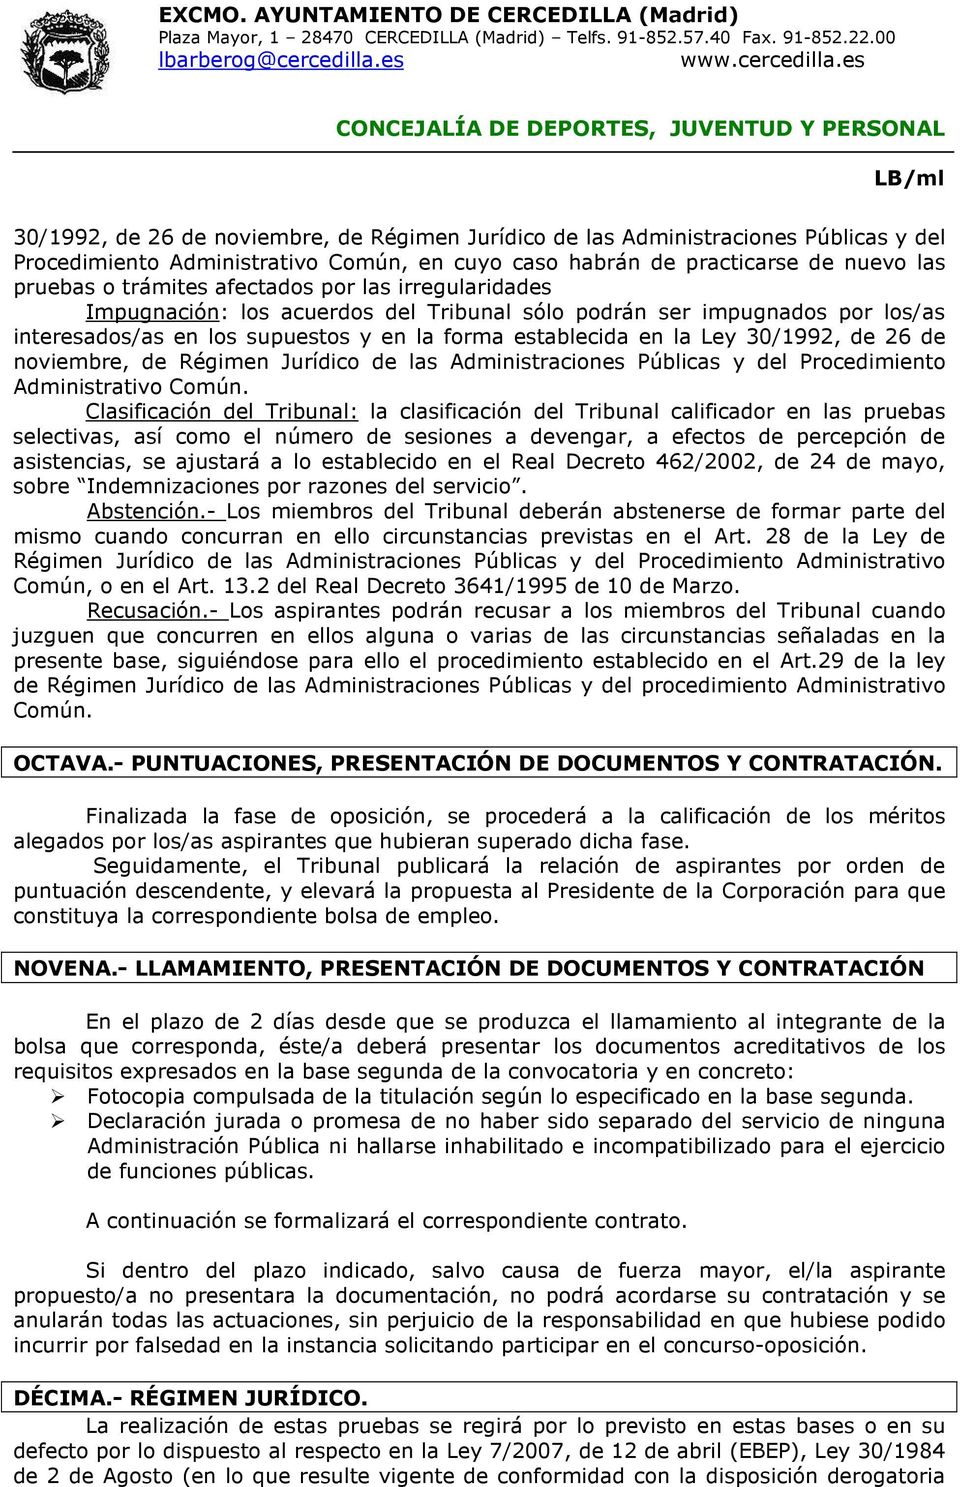 noviembre, de Régimen Jurídico de las Administraciones Públicas y del Procedimiento Administrativo Común.